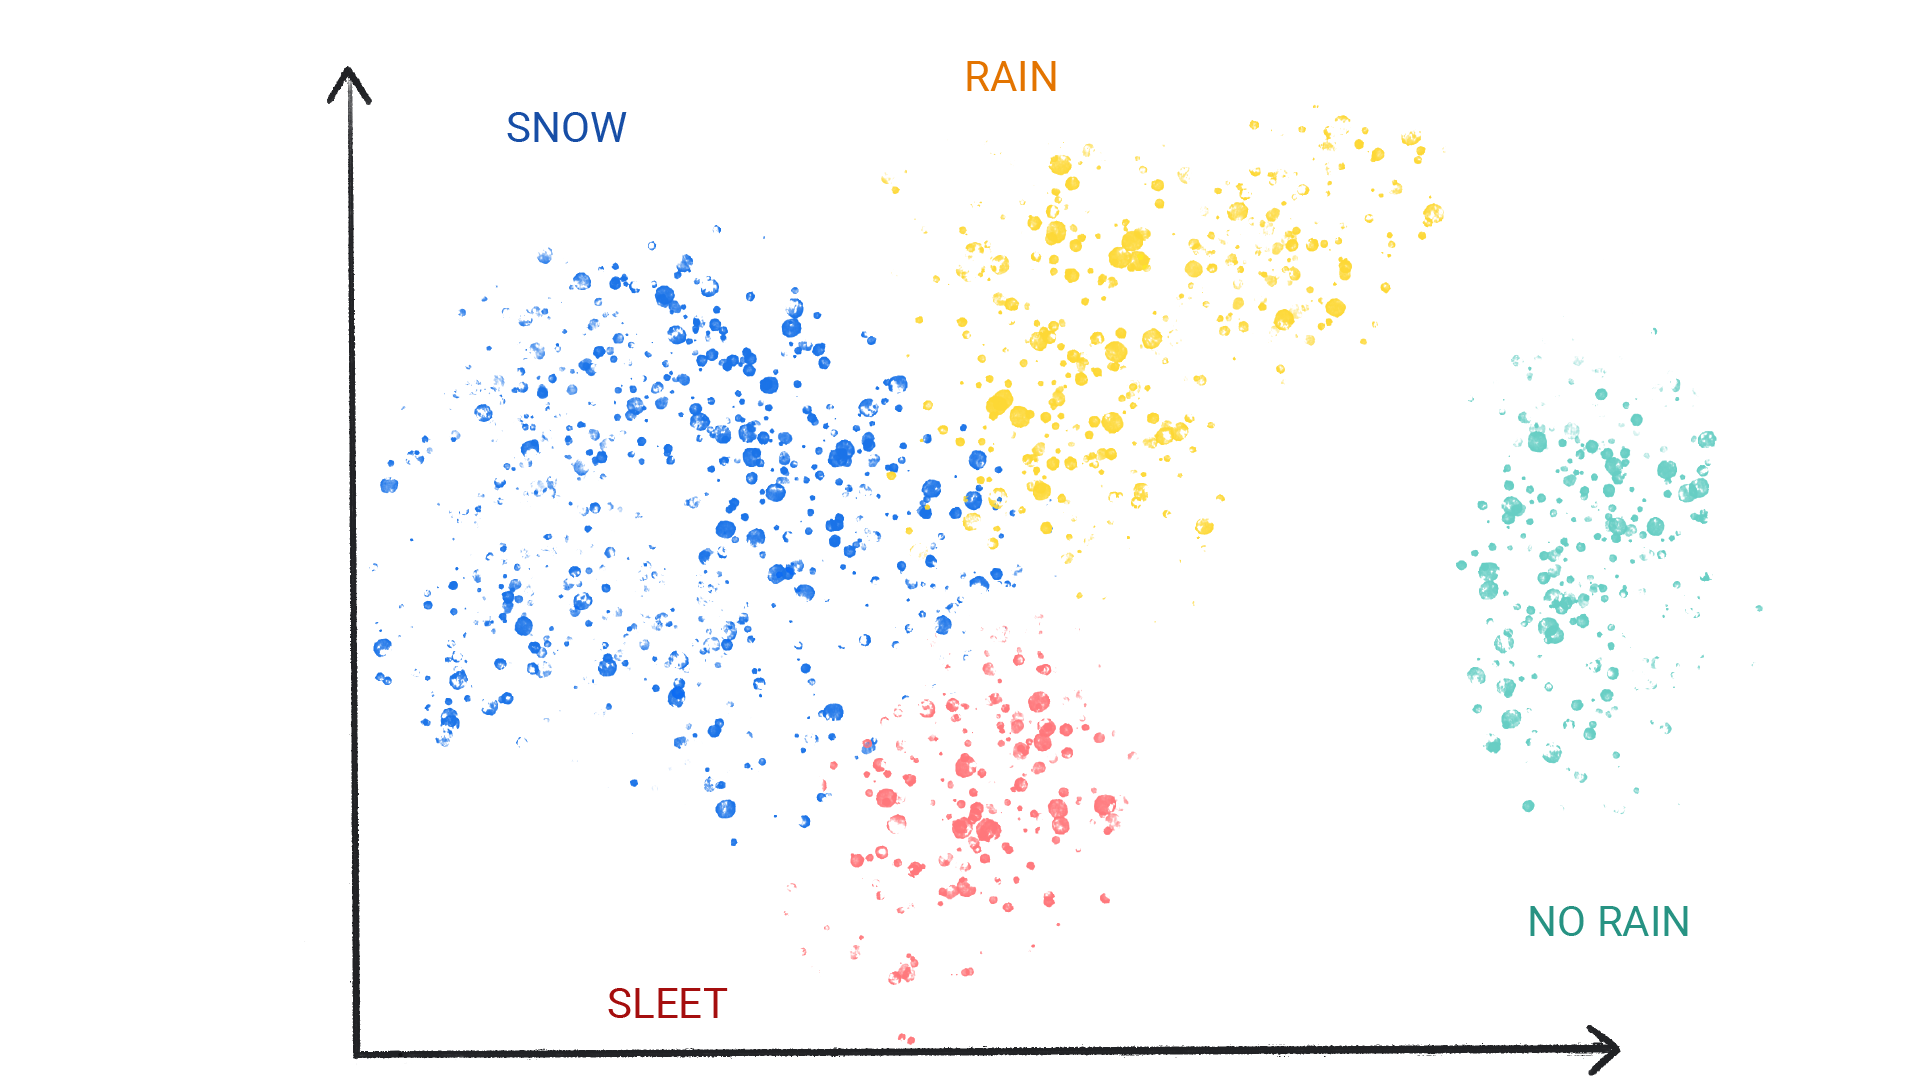 รูปภาพแสดงจุดสีในกลุ่มที่มีป้ายกำกับว่าหิมะ ฝน ลูกเห็บ และไม่มีฝน